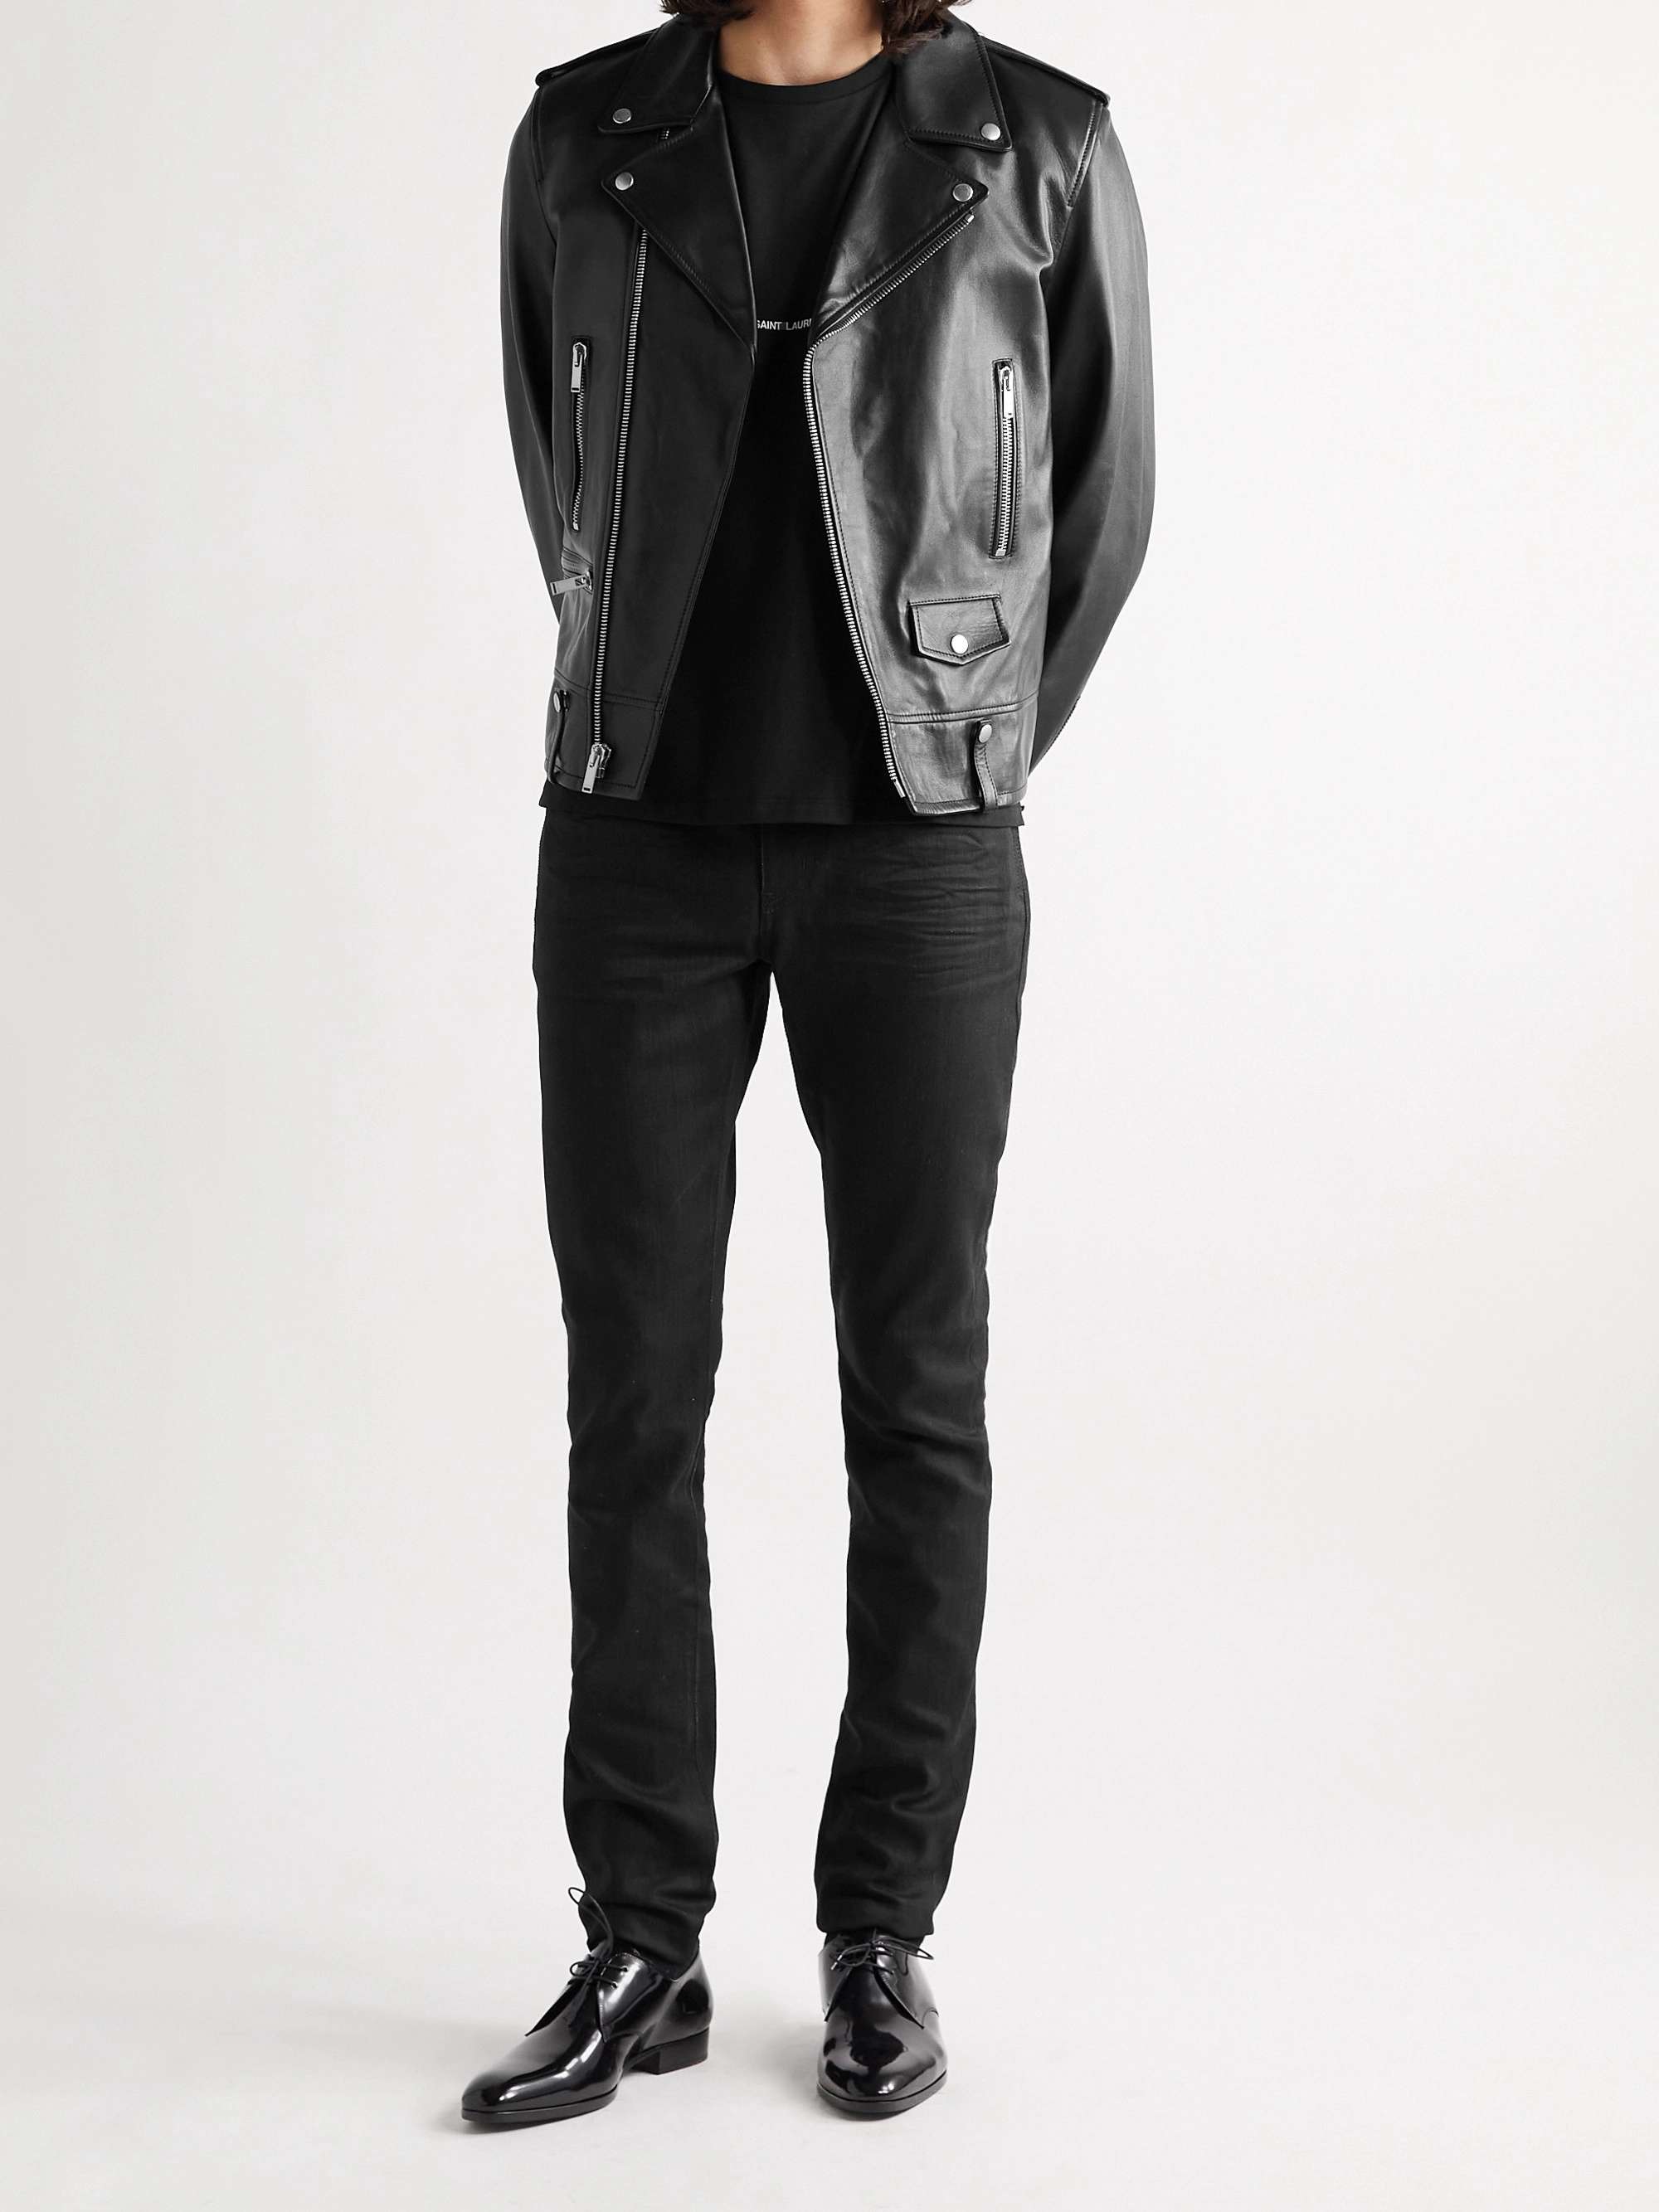 SAINT LAURENT Slim-Fit Leather Biker Jacket for Men | MR PORTER